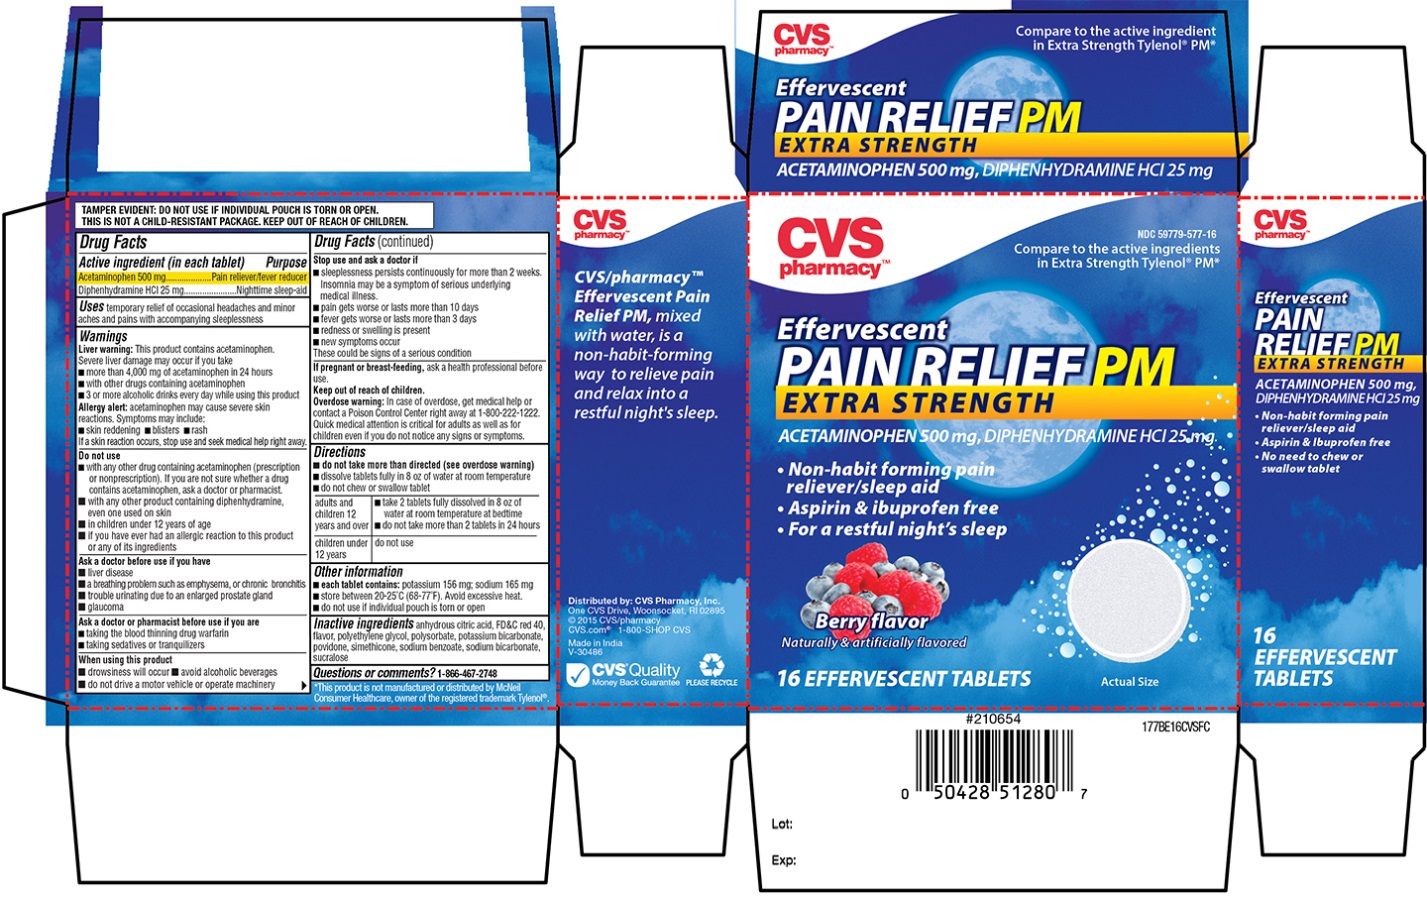 CVS Effervescent Pain Relief PM